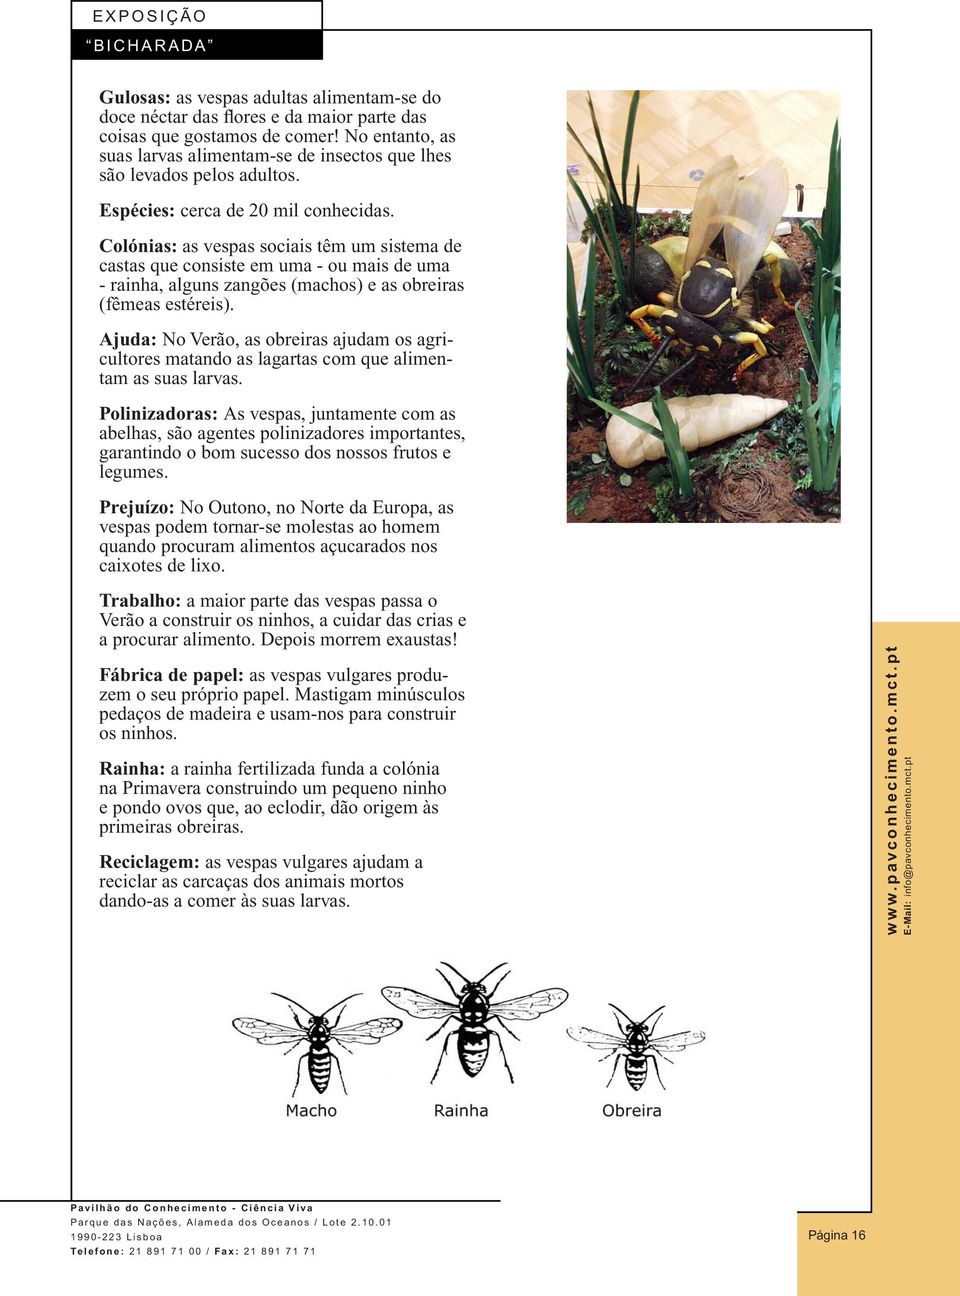 Colónias: as vespas sociais têm um sistema de castas que consiste em uma - ou mais de uma - rainha, alguns zangões (machos) e as obreiras (fêmeas estéreis).